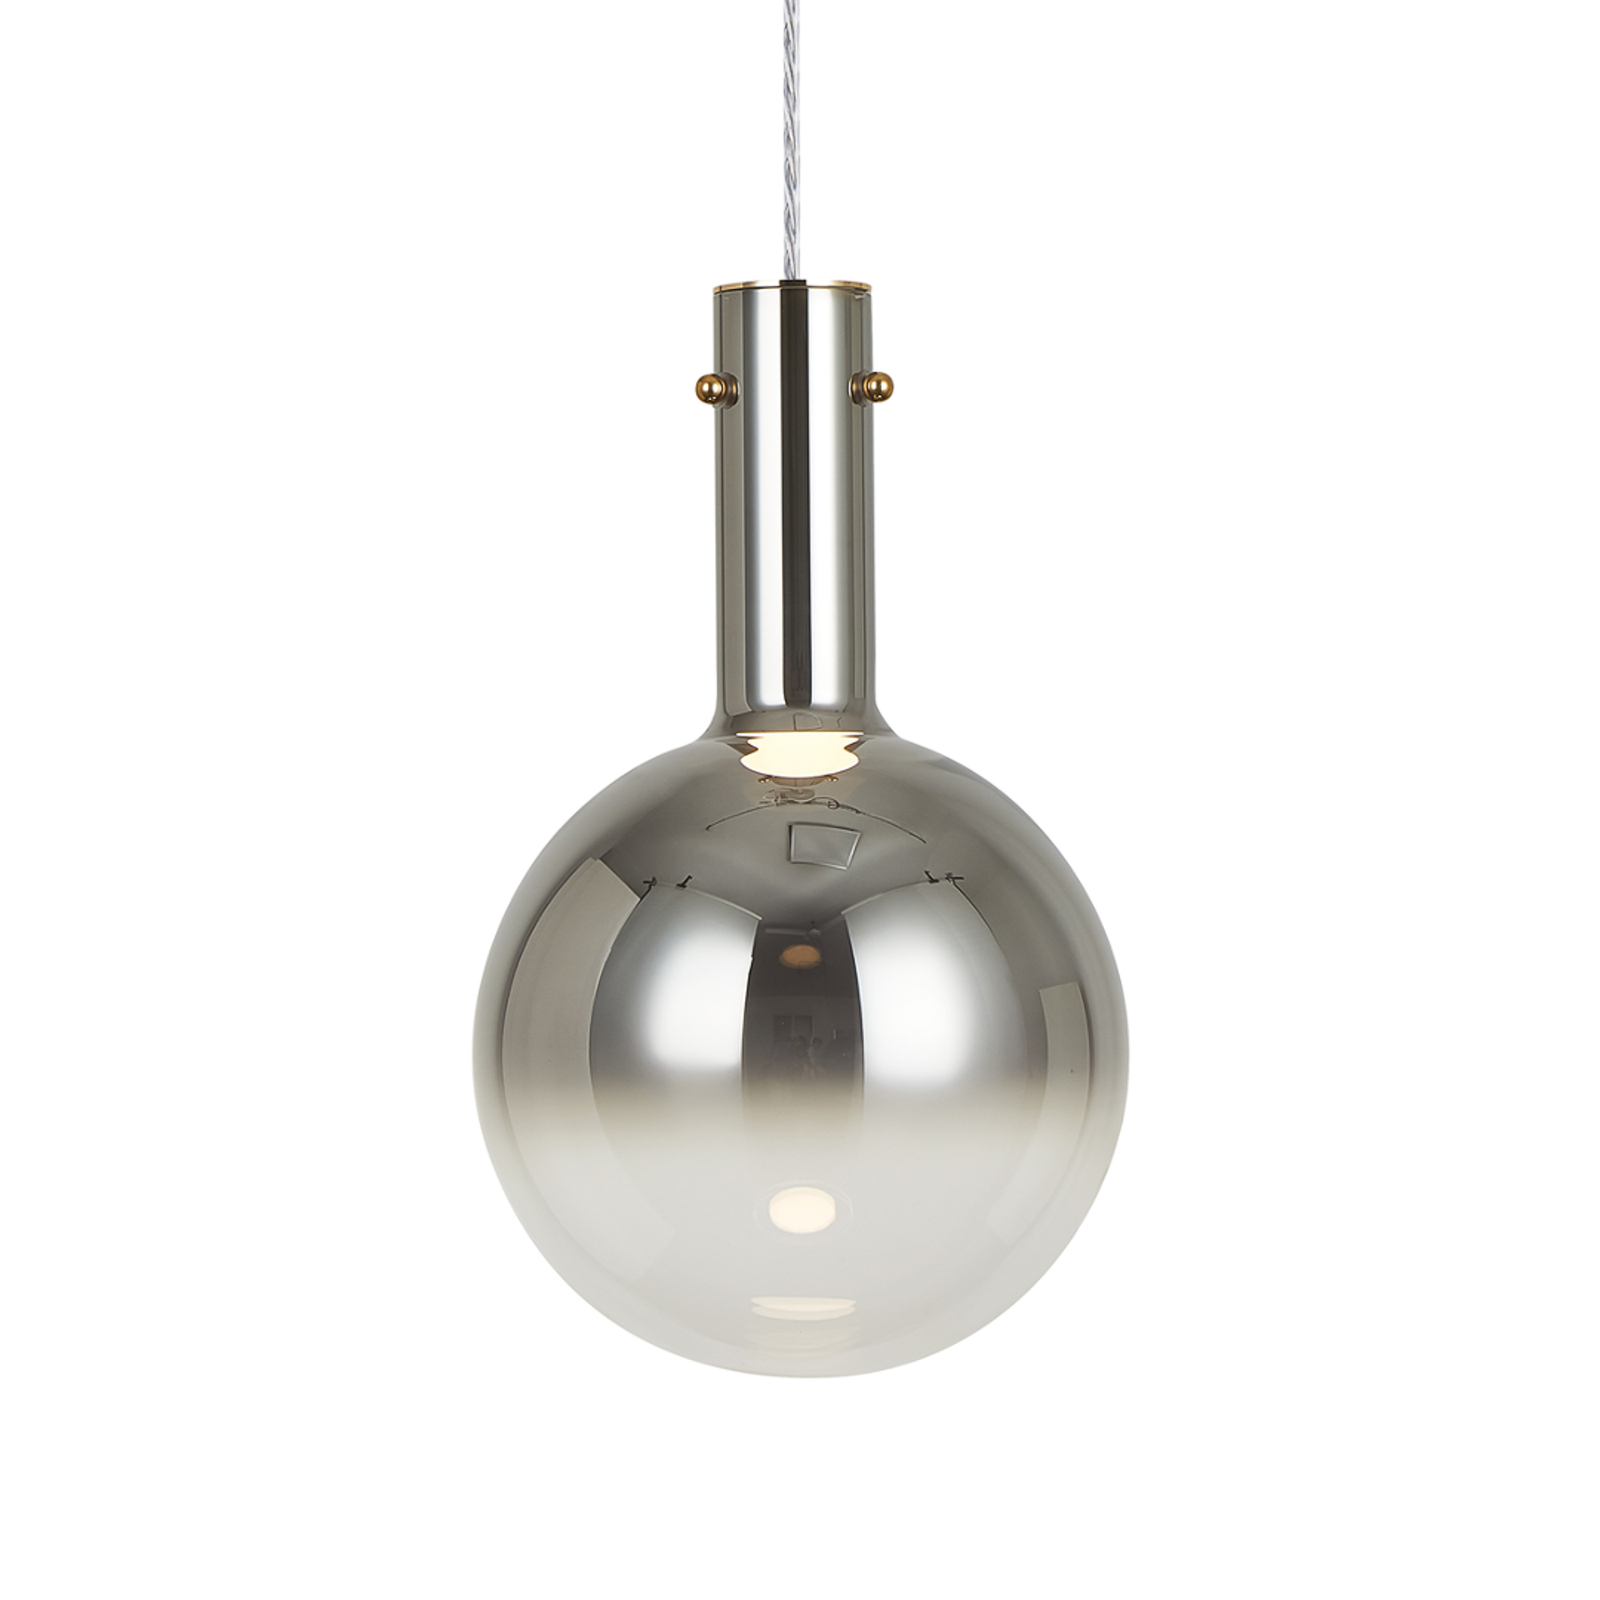 Toronto hanglamp, chroom-transparante glazen bol, Ø 25 cm